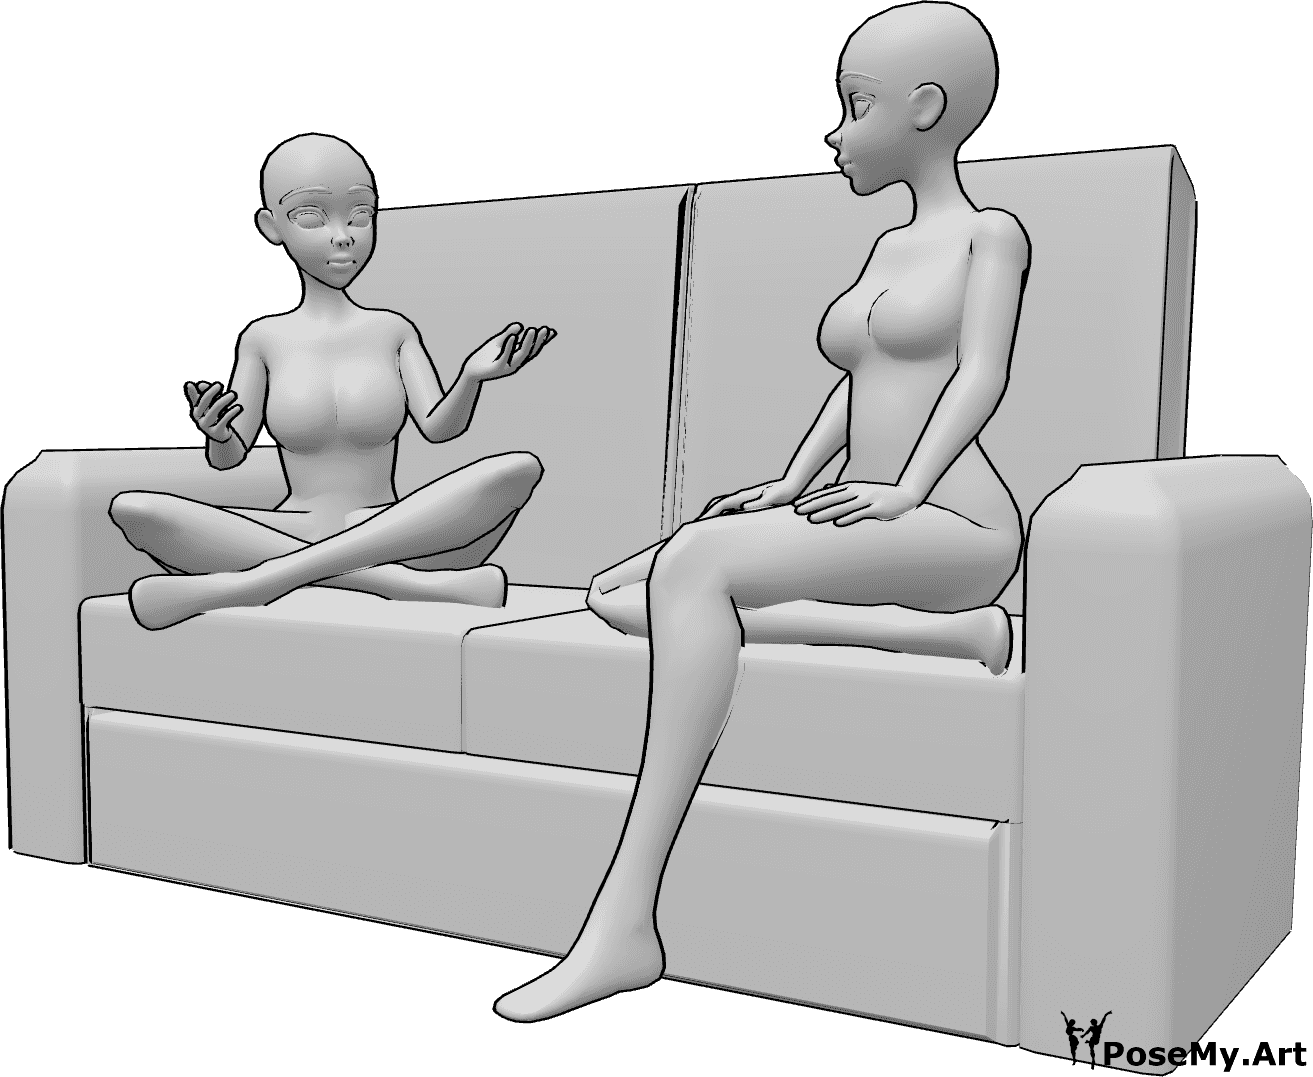 Referencia de poses- Anime sentado hablando pose - Dos mujeres anime están sentadas en el sofá y hablando, mirándose la una a la otra